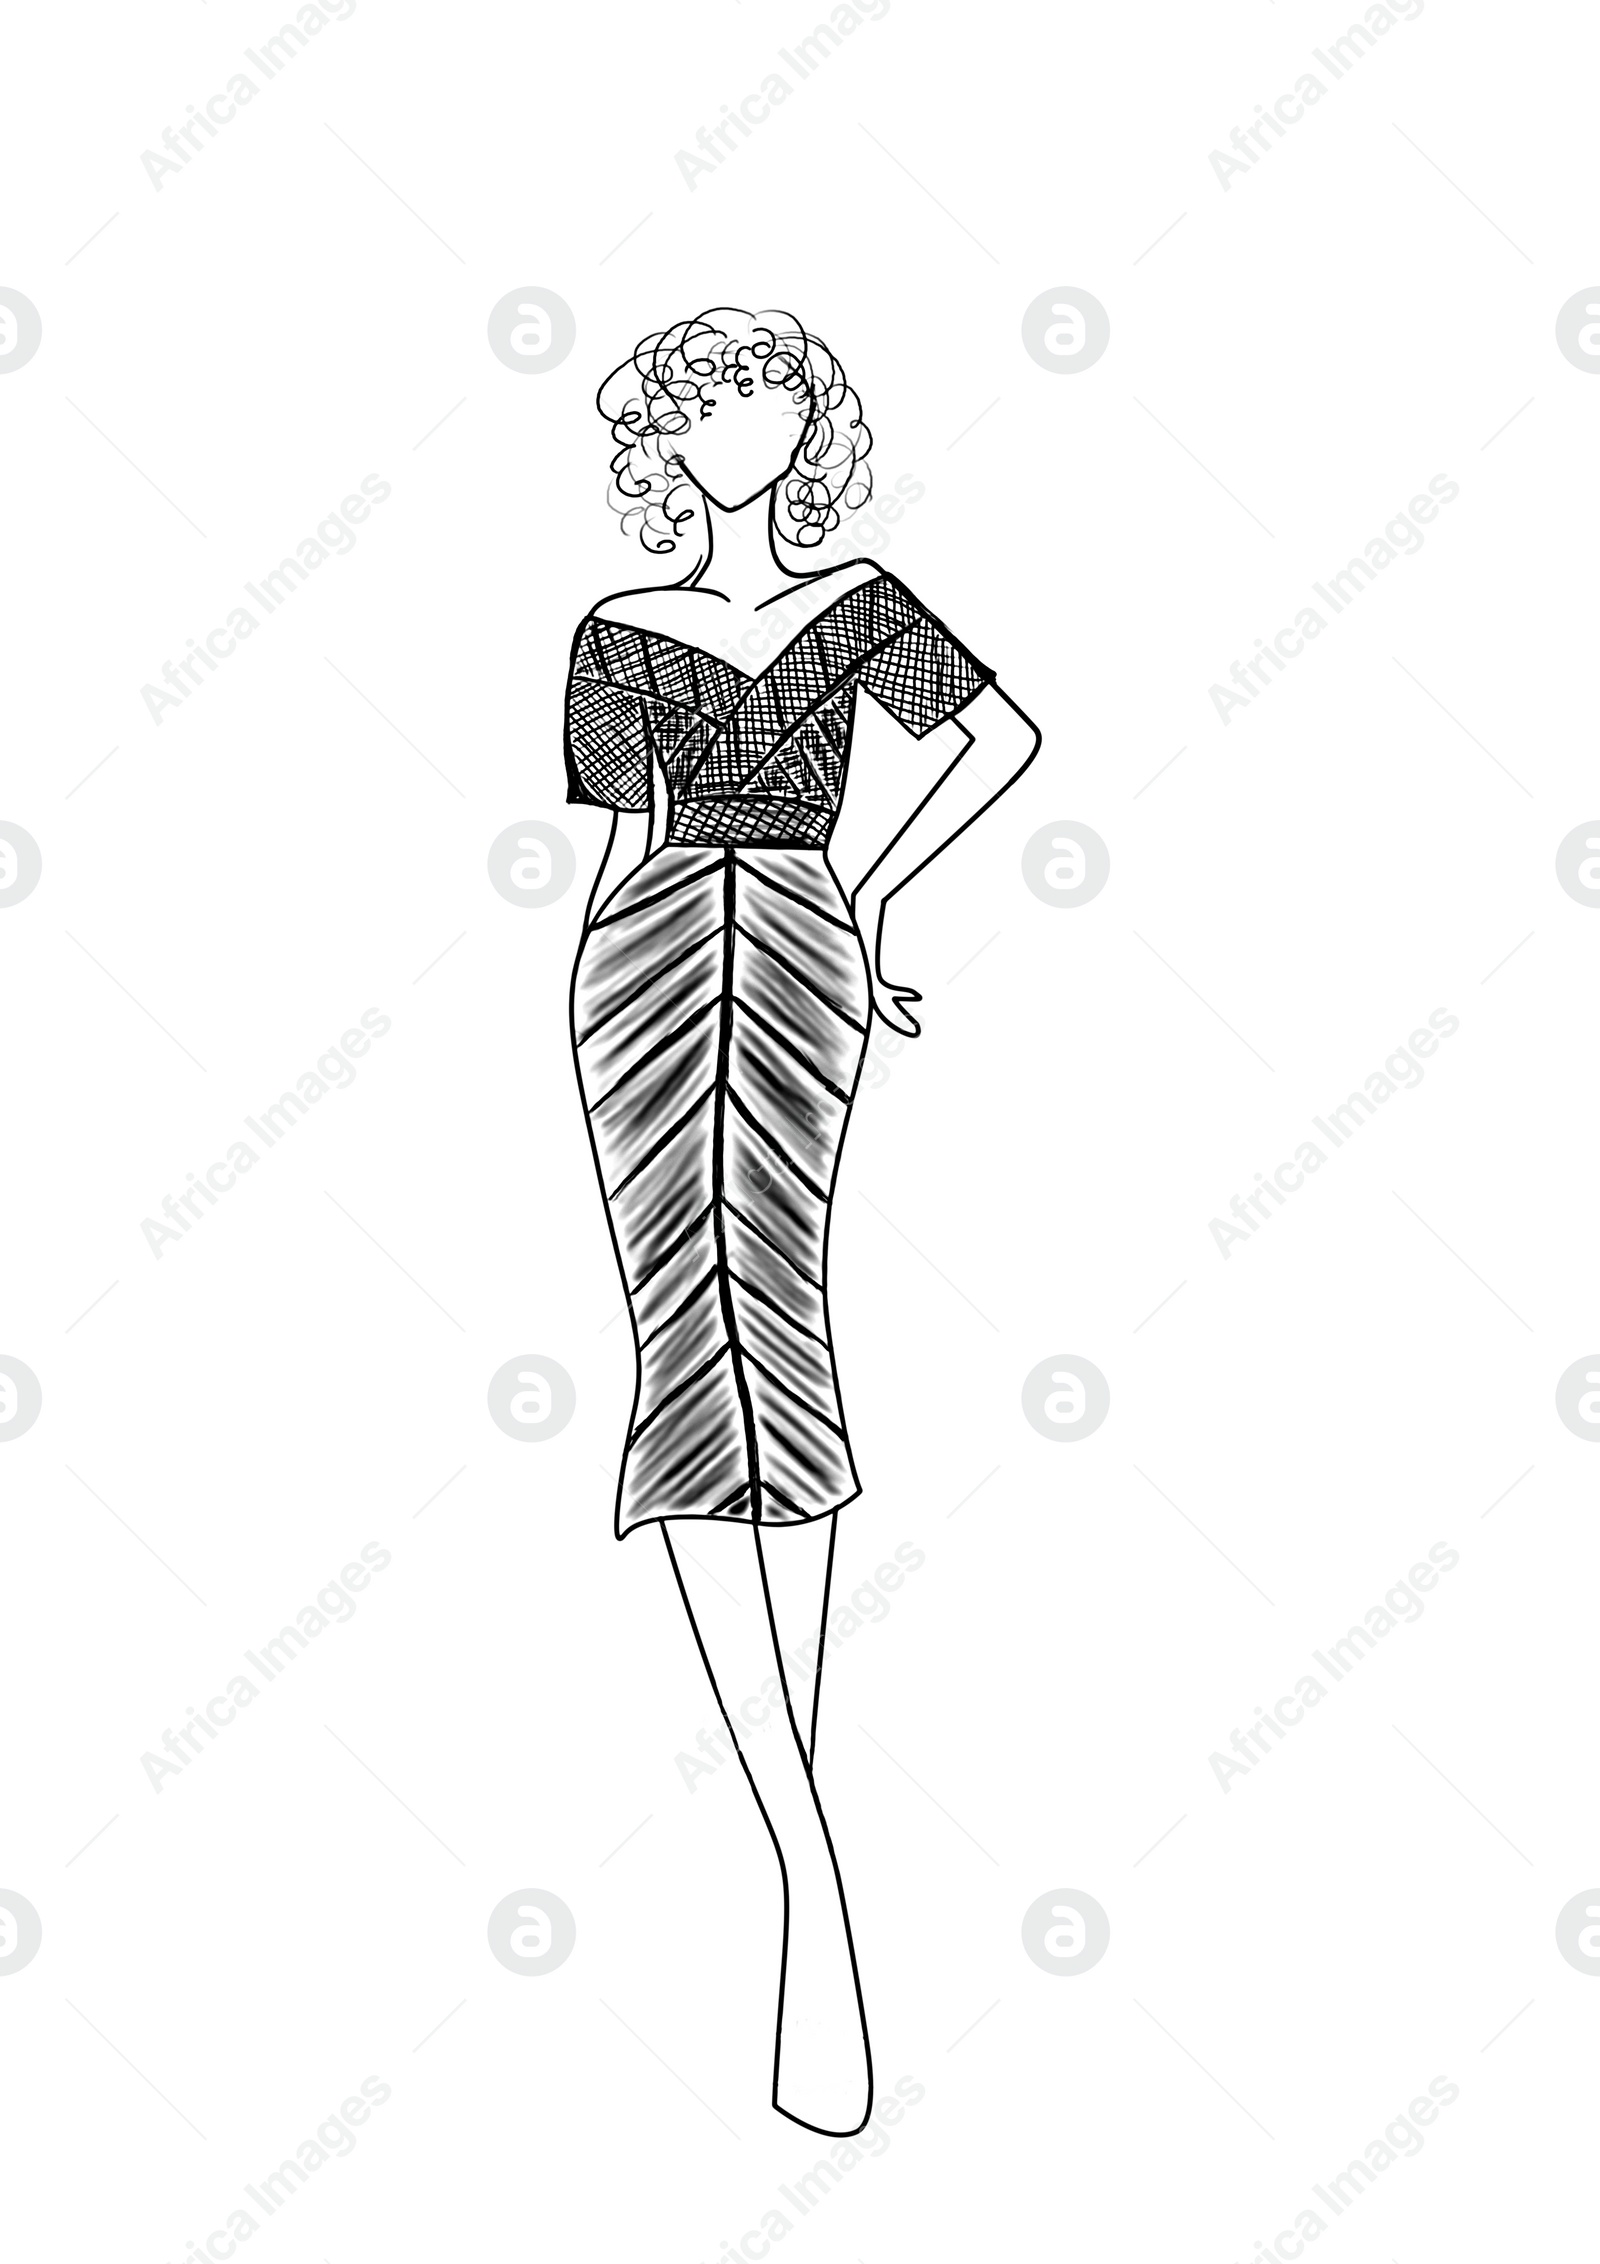 Image of Fashion sketch. Model wearing stylish dress on white background, illustration